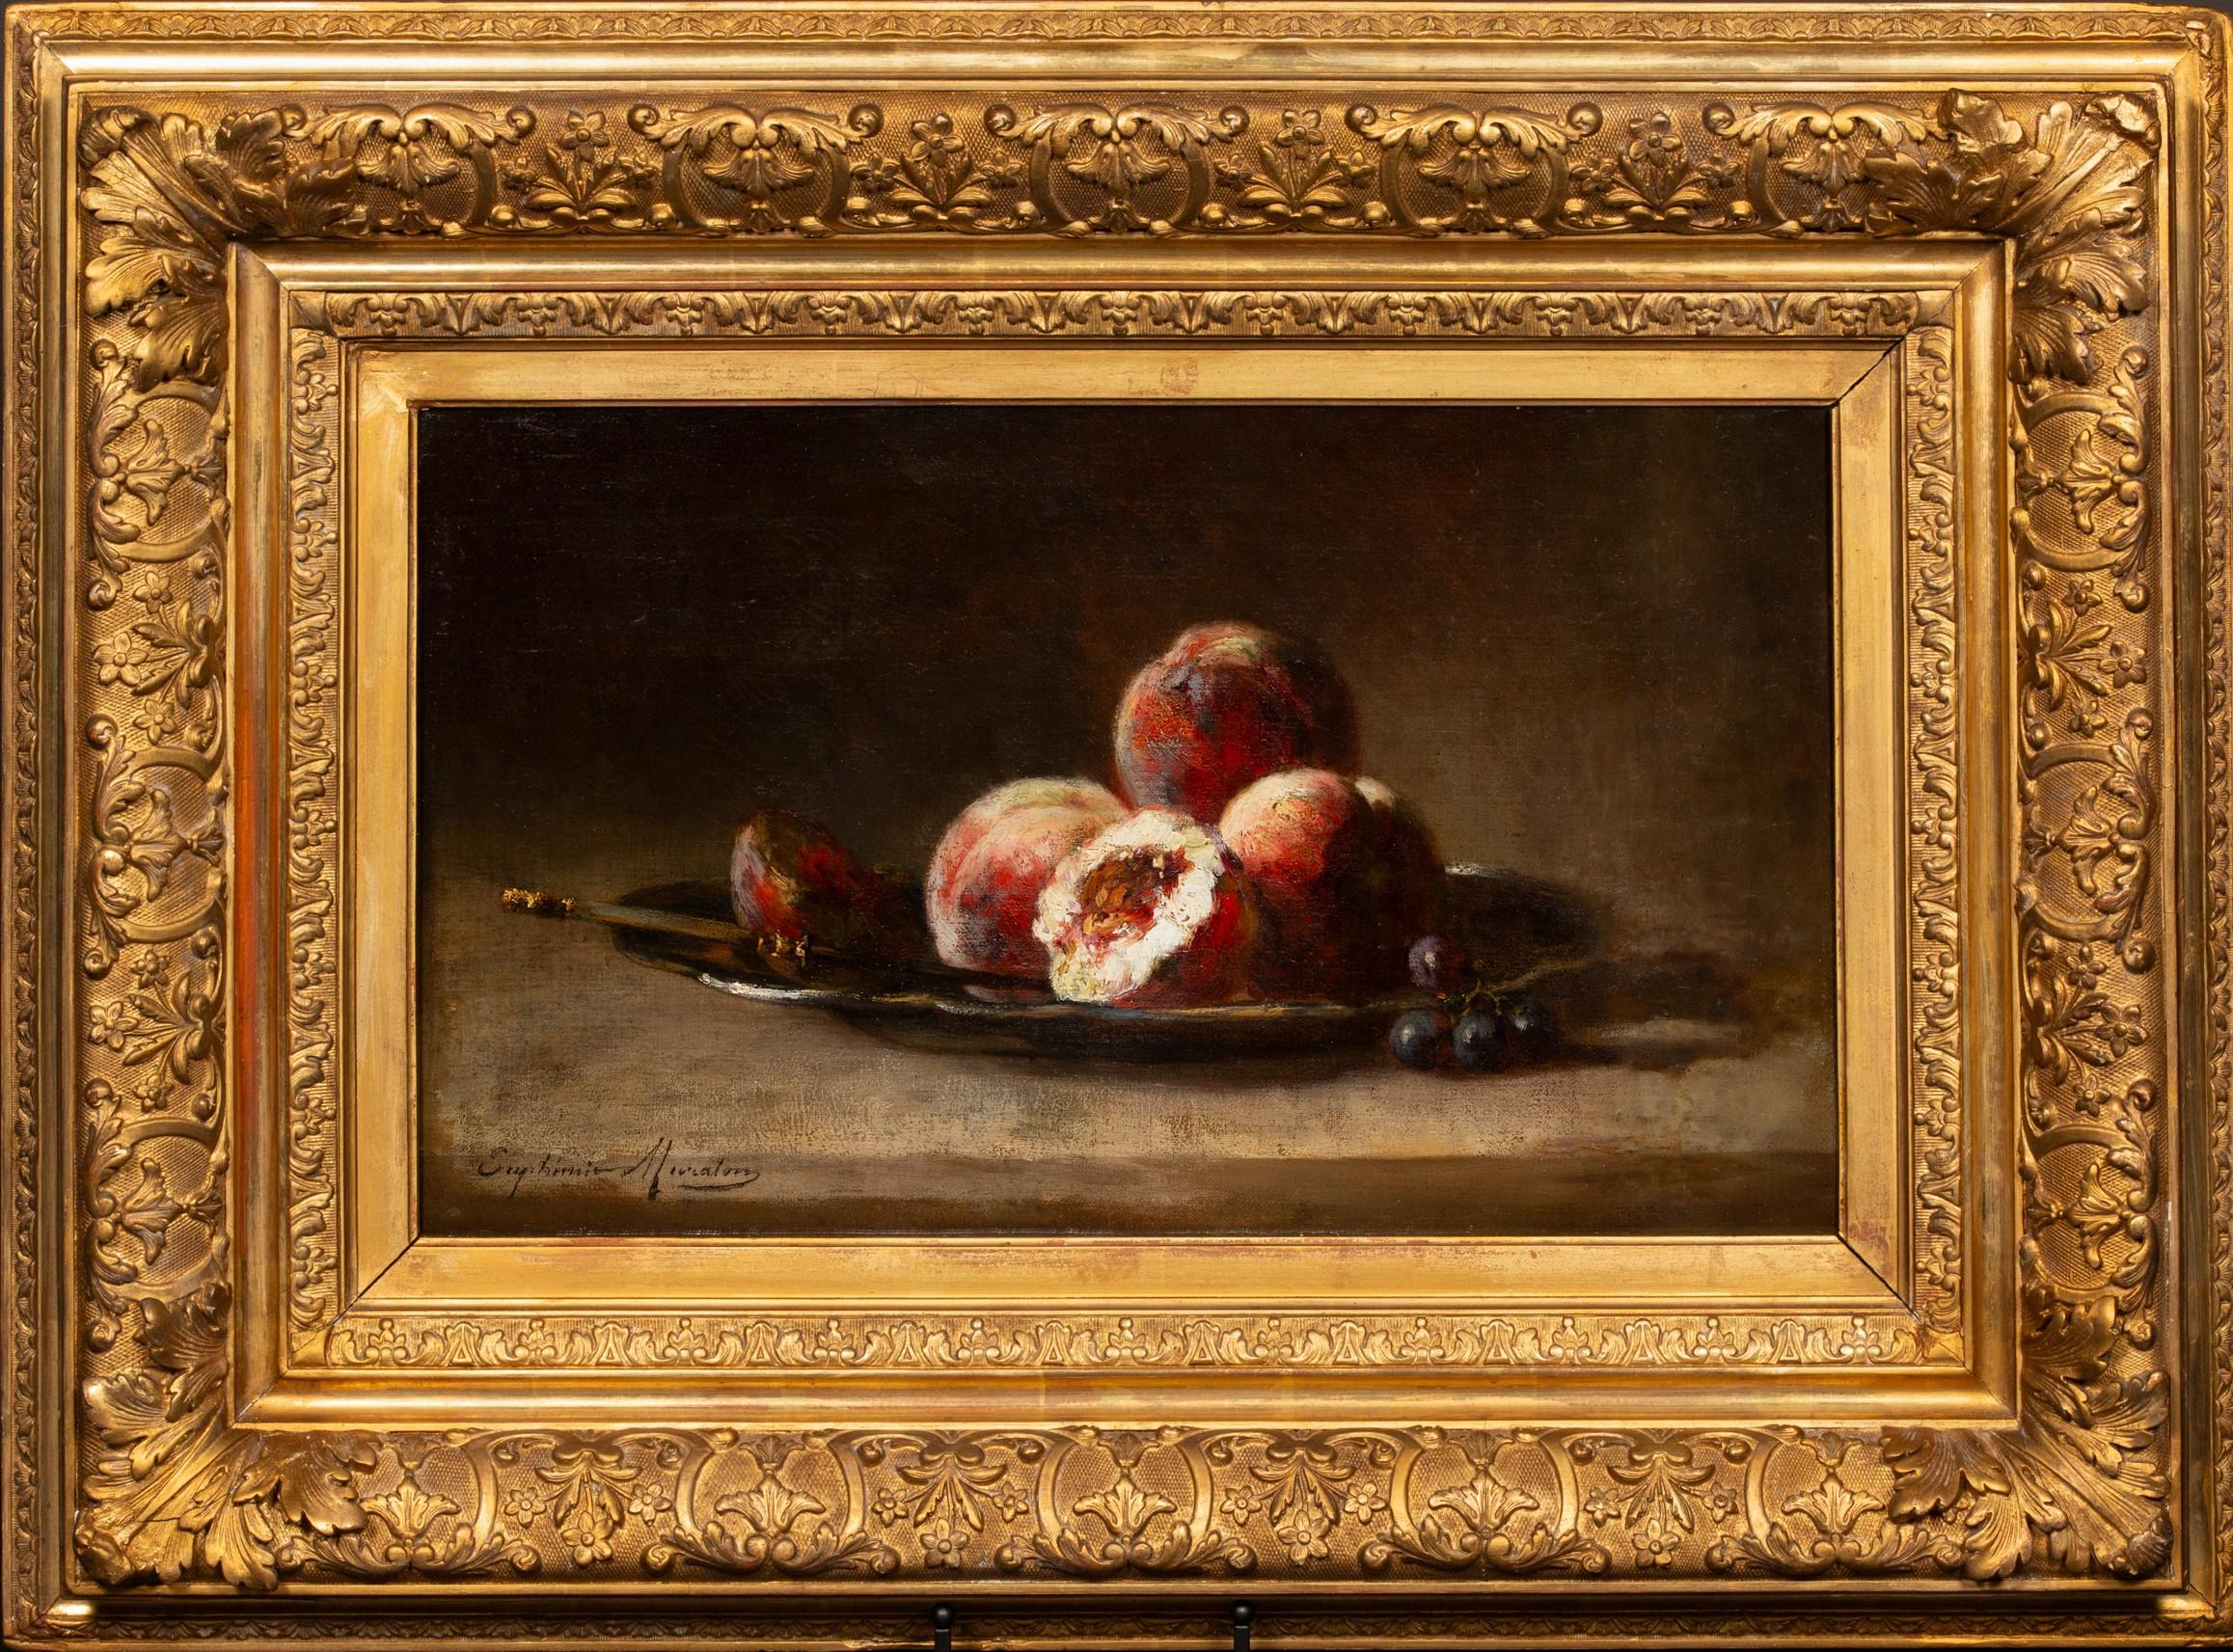 Stillleben mit Früchten von Euphémie Muraton (1840-1914) – Painting von Euphemie Muraton